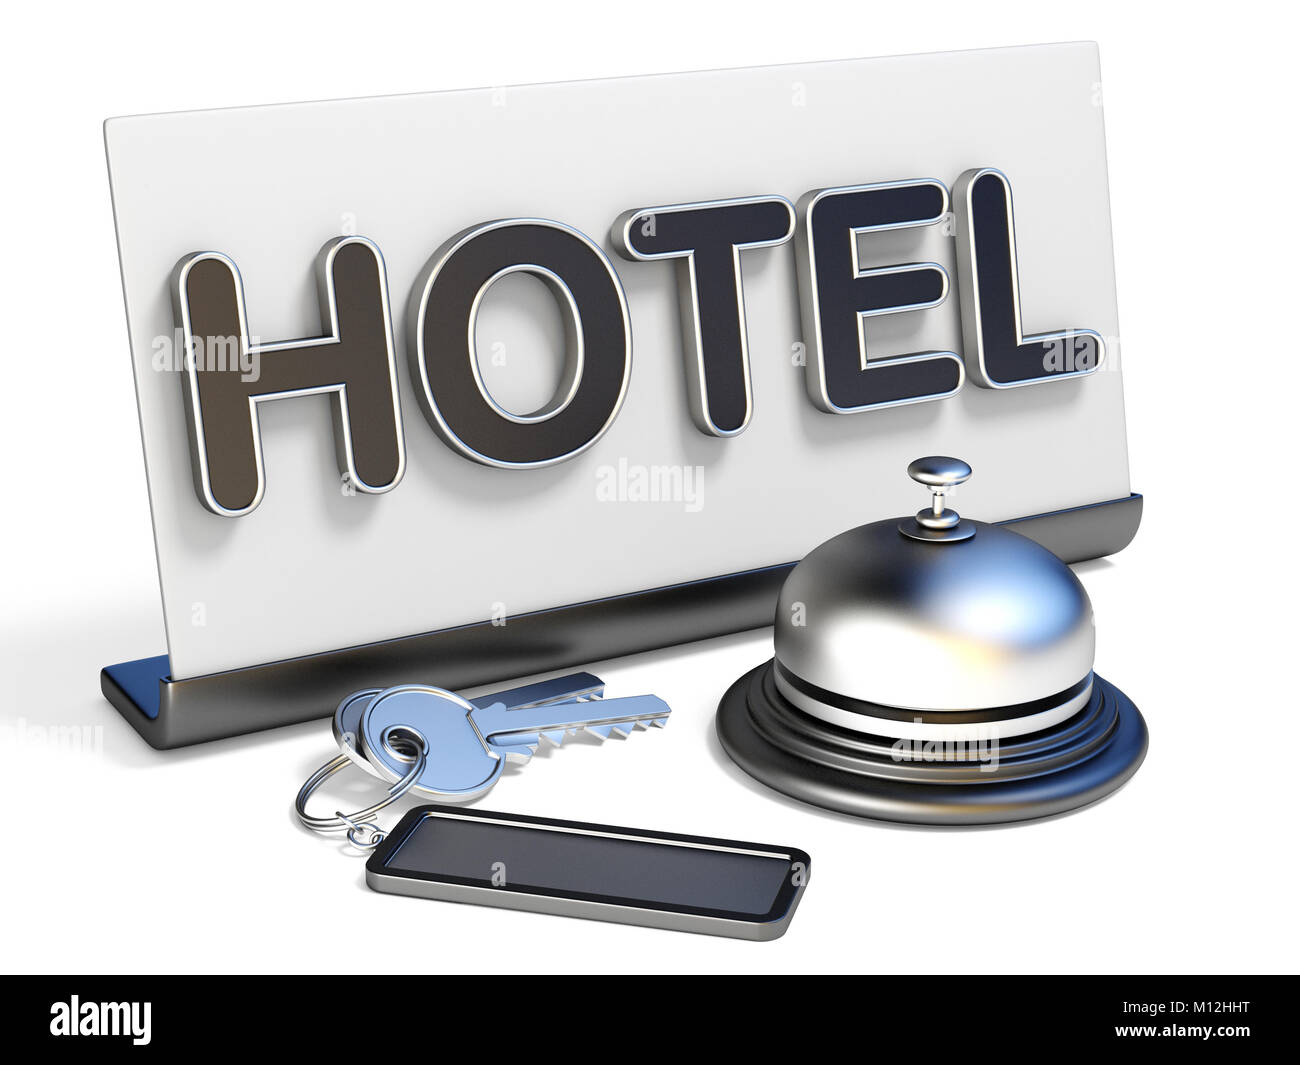 Hôtel bell, signer et hôtel keys 3D render illustration isolé sur fond blanc Banque D'Images